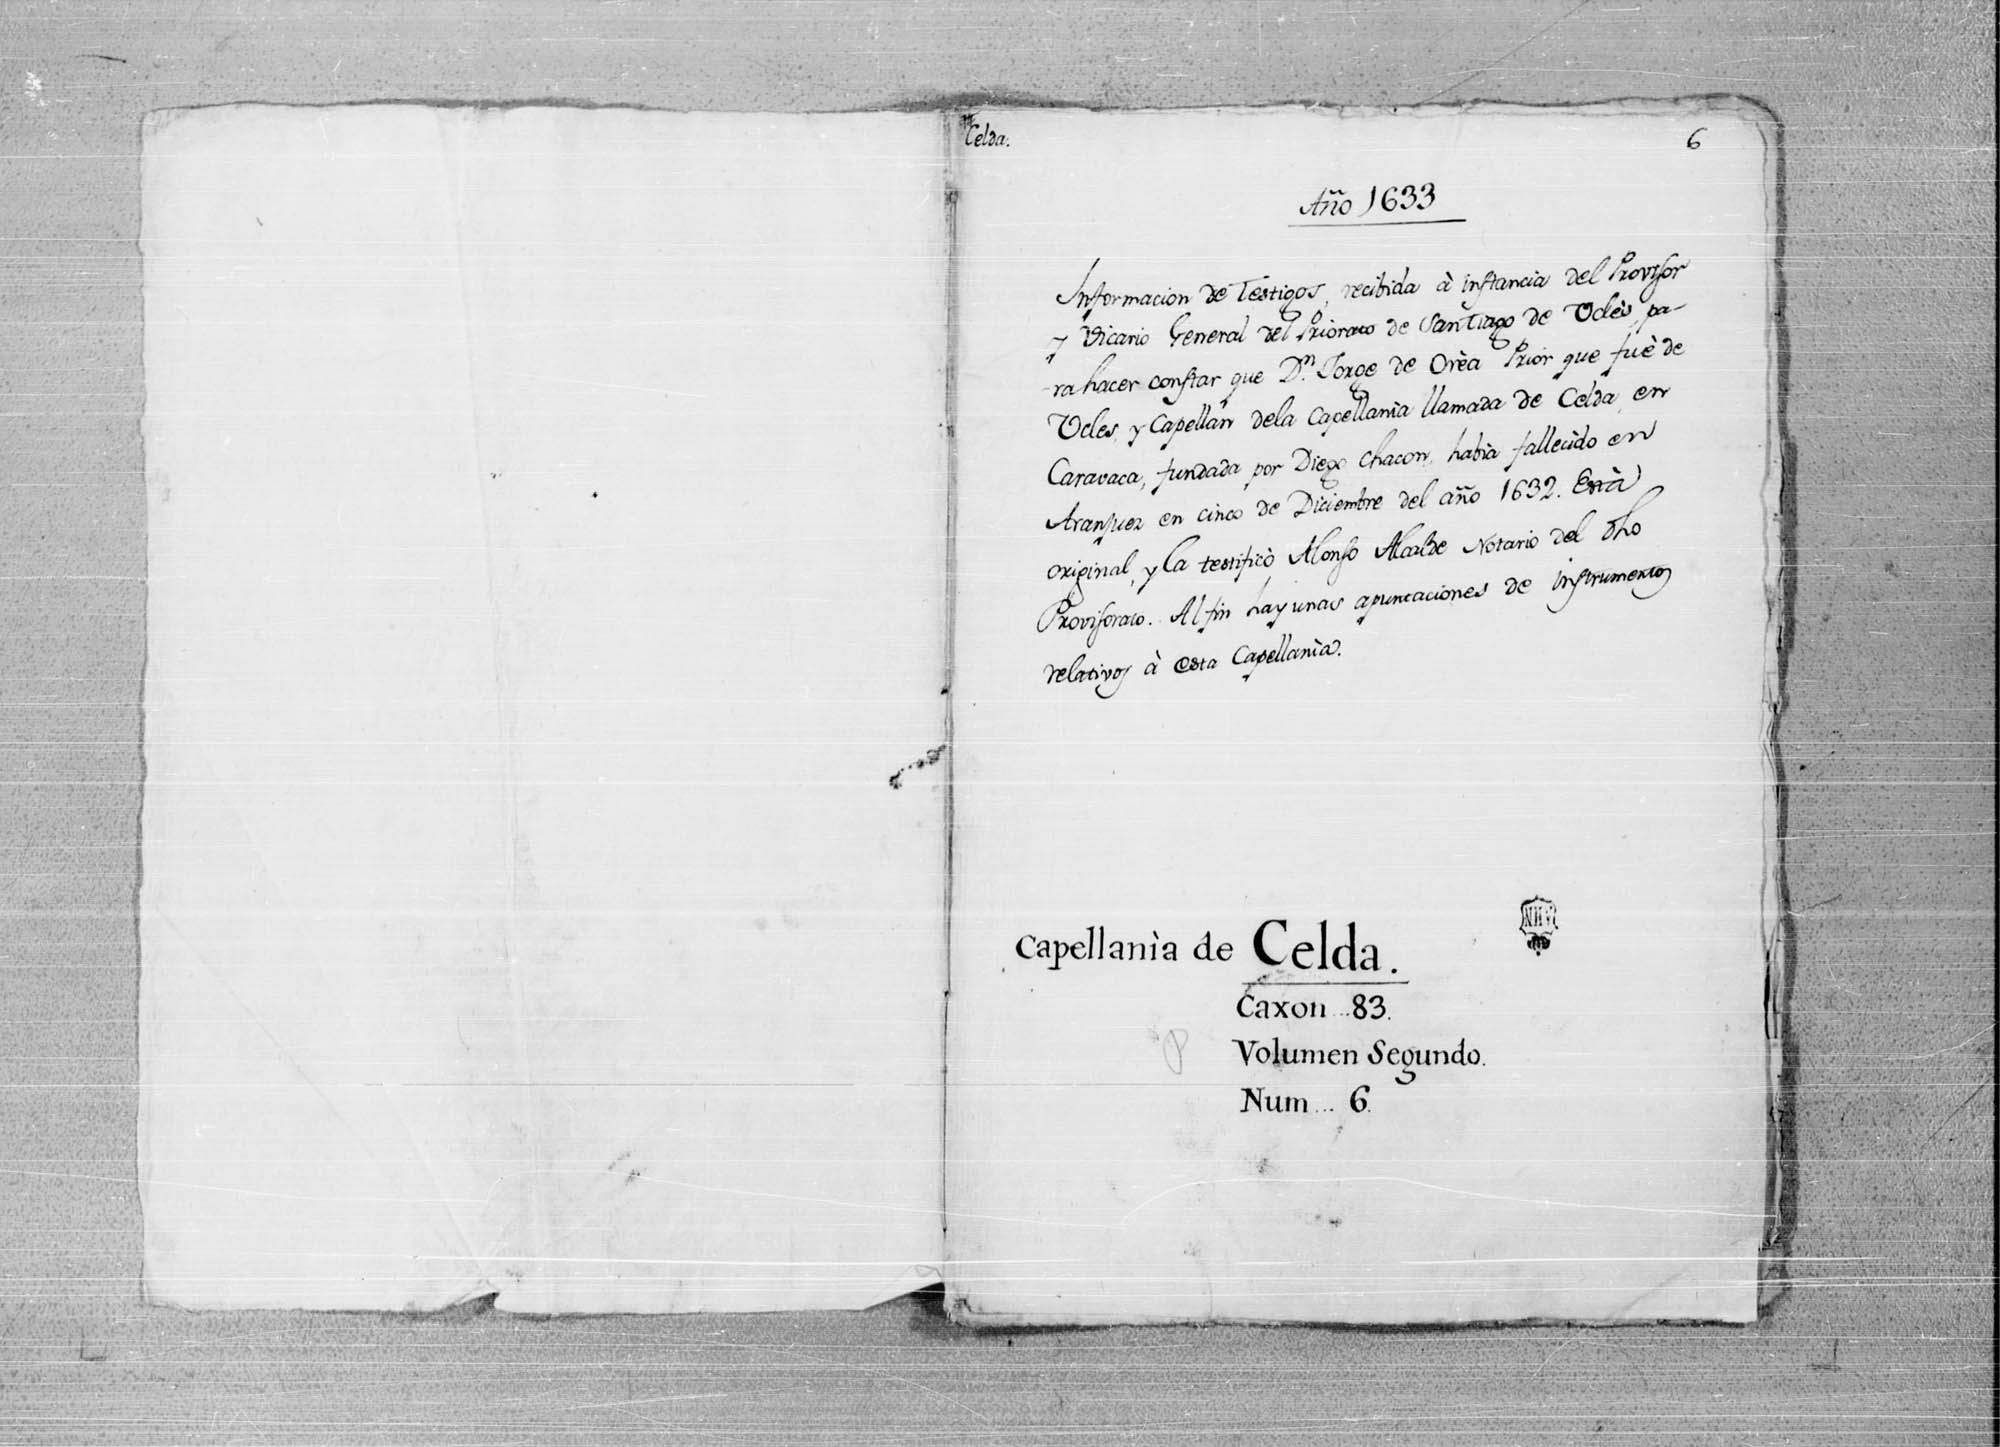 Información de testigos, recibida a instancia del provisor de Uclés, por no hacer constar que Jorge de Orea, prior de Uclés y capellán de la capellanía de Celda en Caravaca, fundada por Diego Chacón, había fallecido en Aranjuez el 5 de diciembre de 1632.